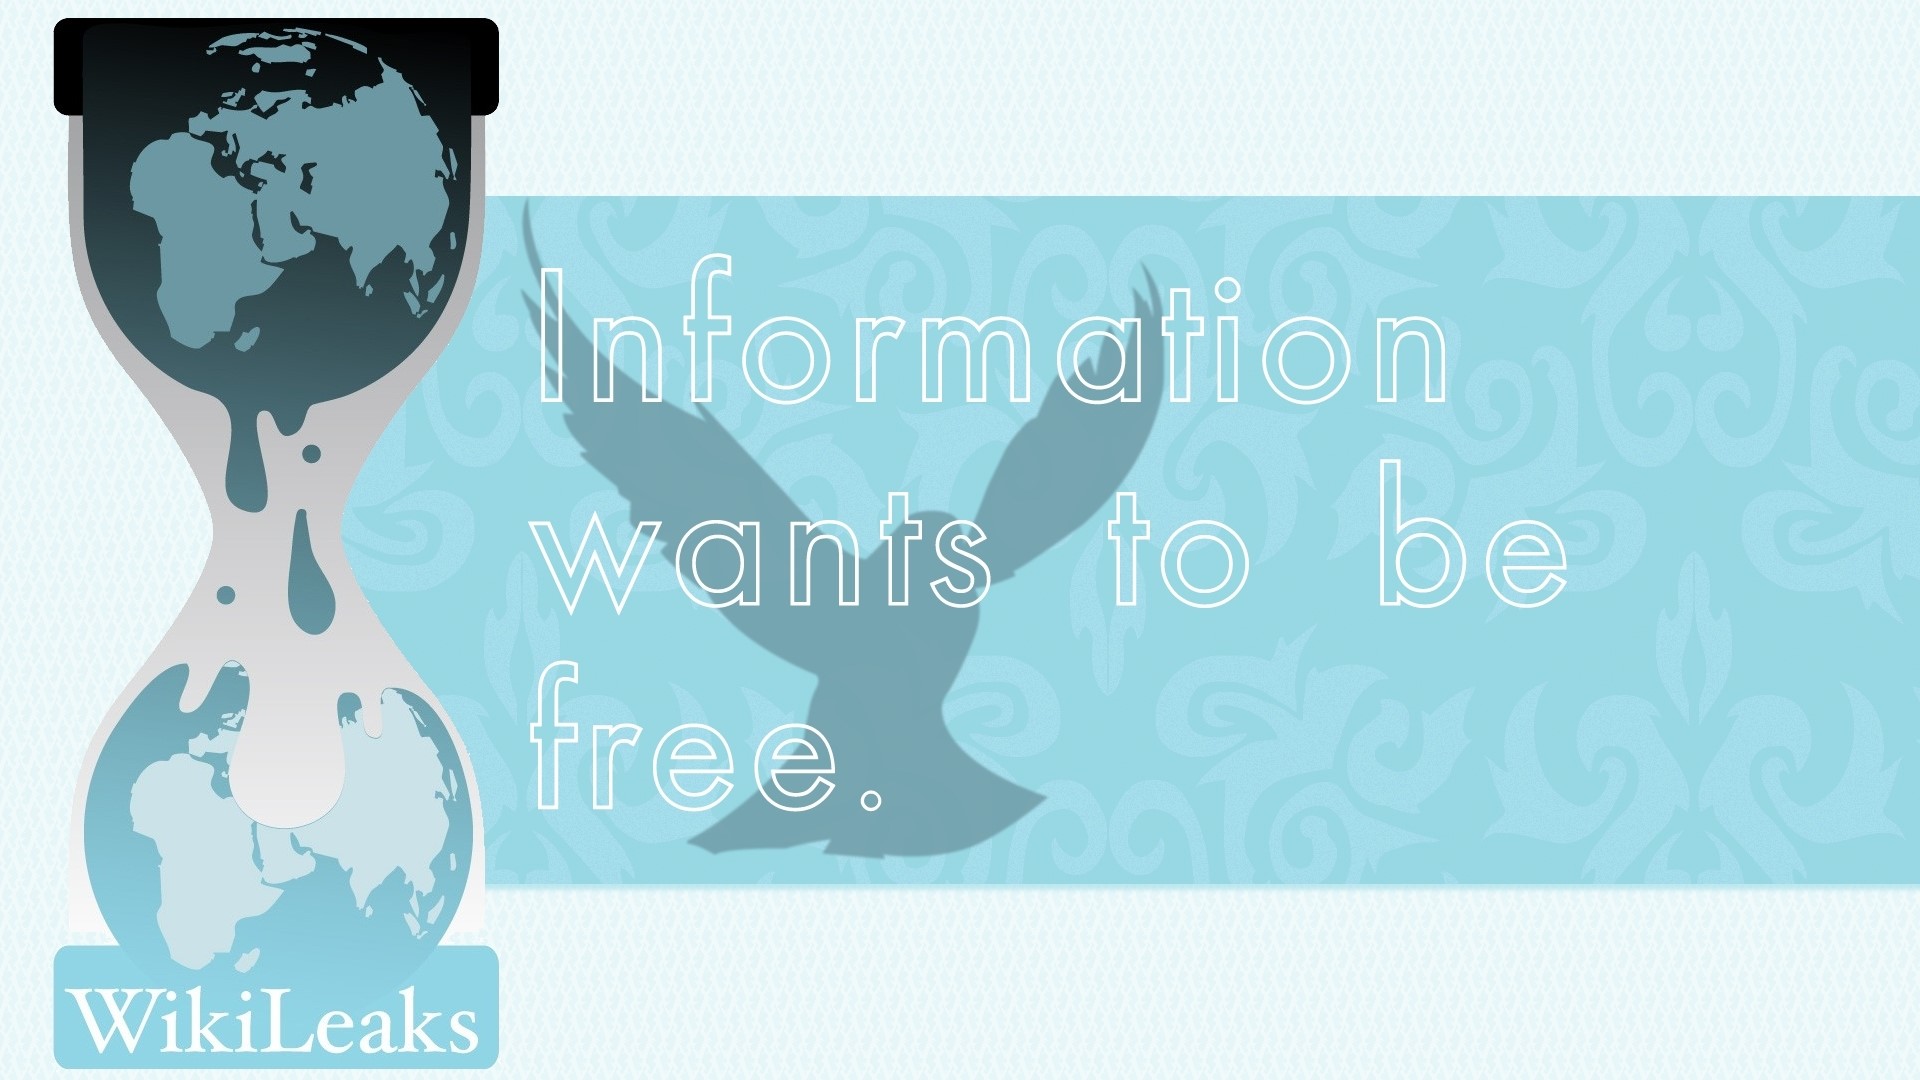 Hd wikileaks information wants to be free